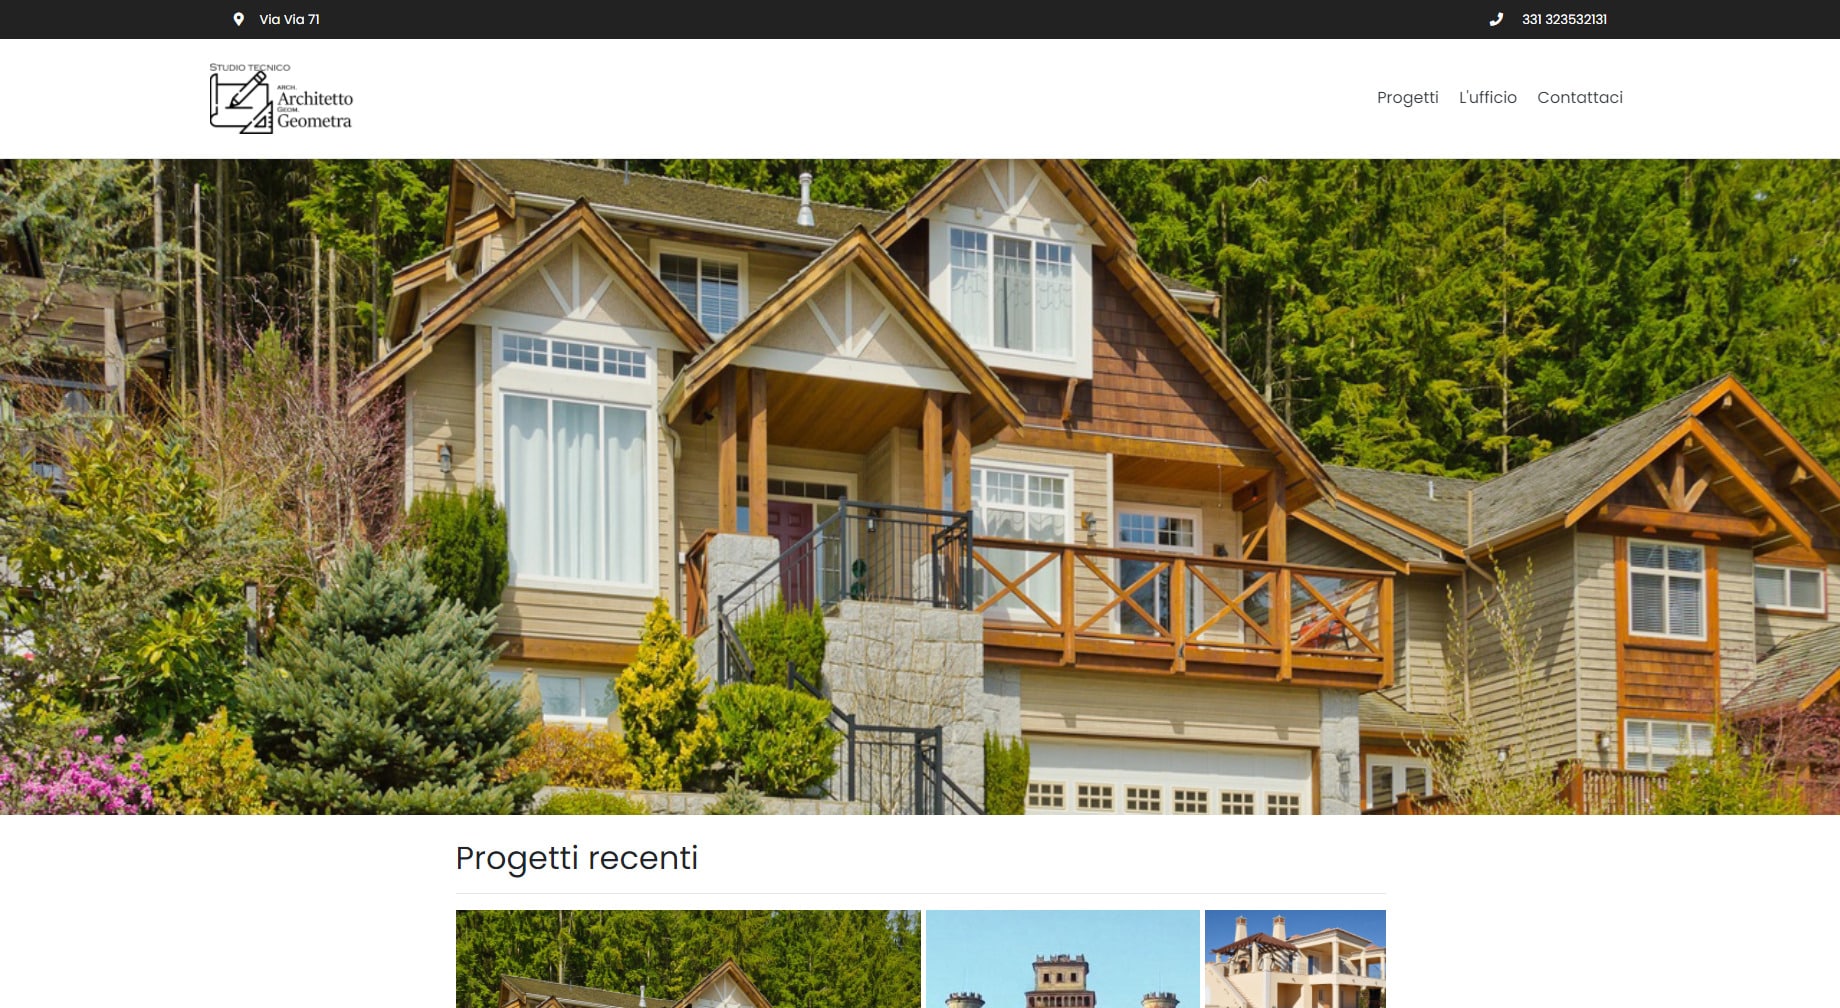 ScreenShot del sito web per un Architetto di Asti realizzato da ABCLABS visto da computer